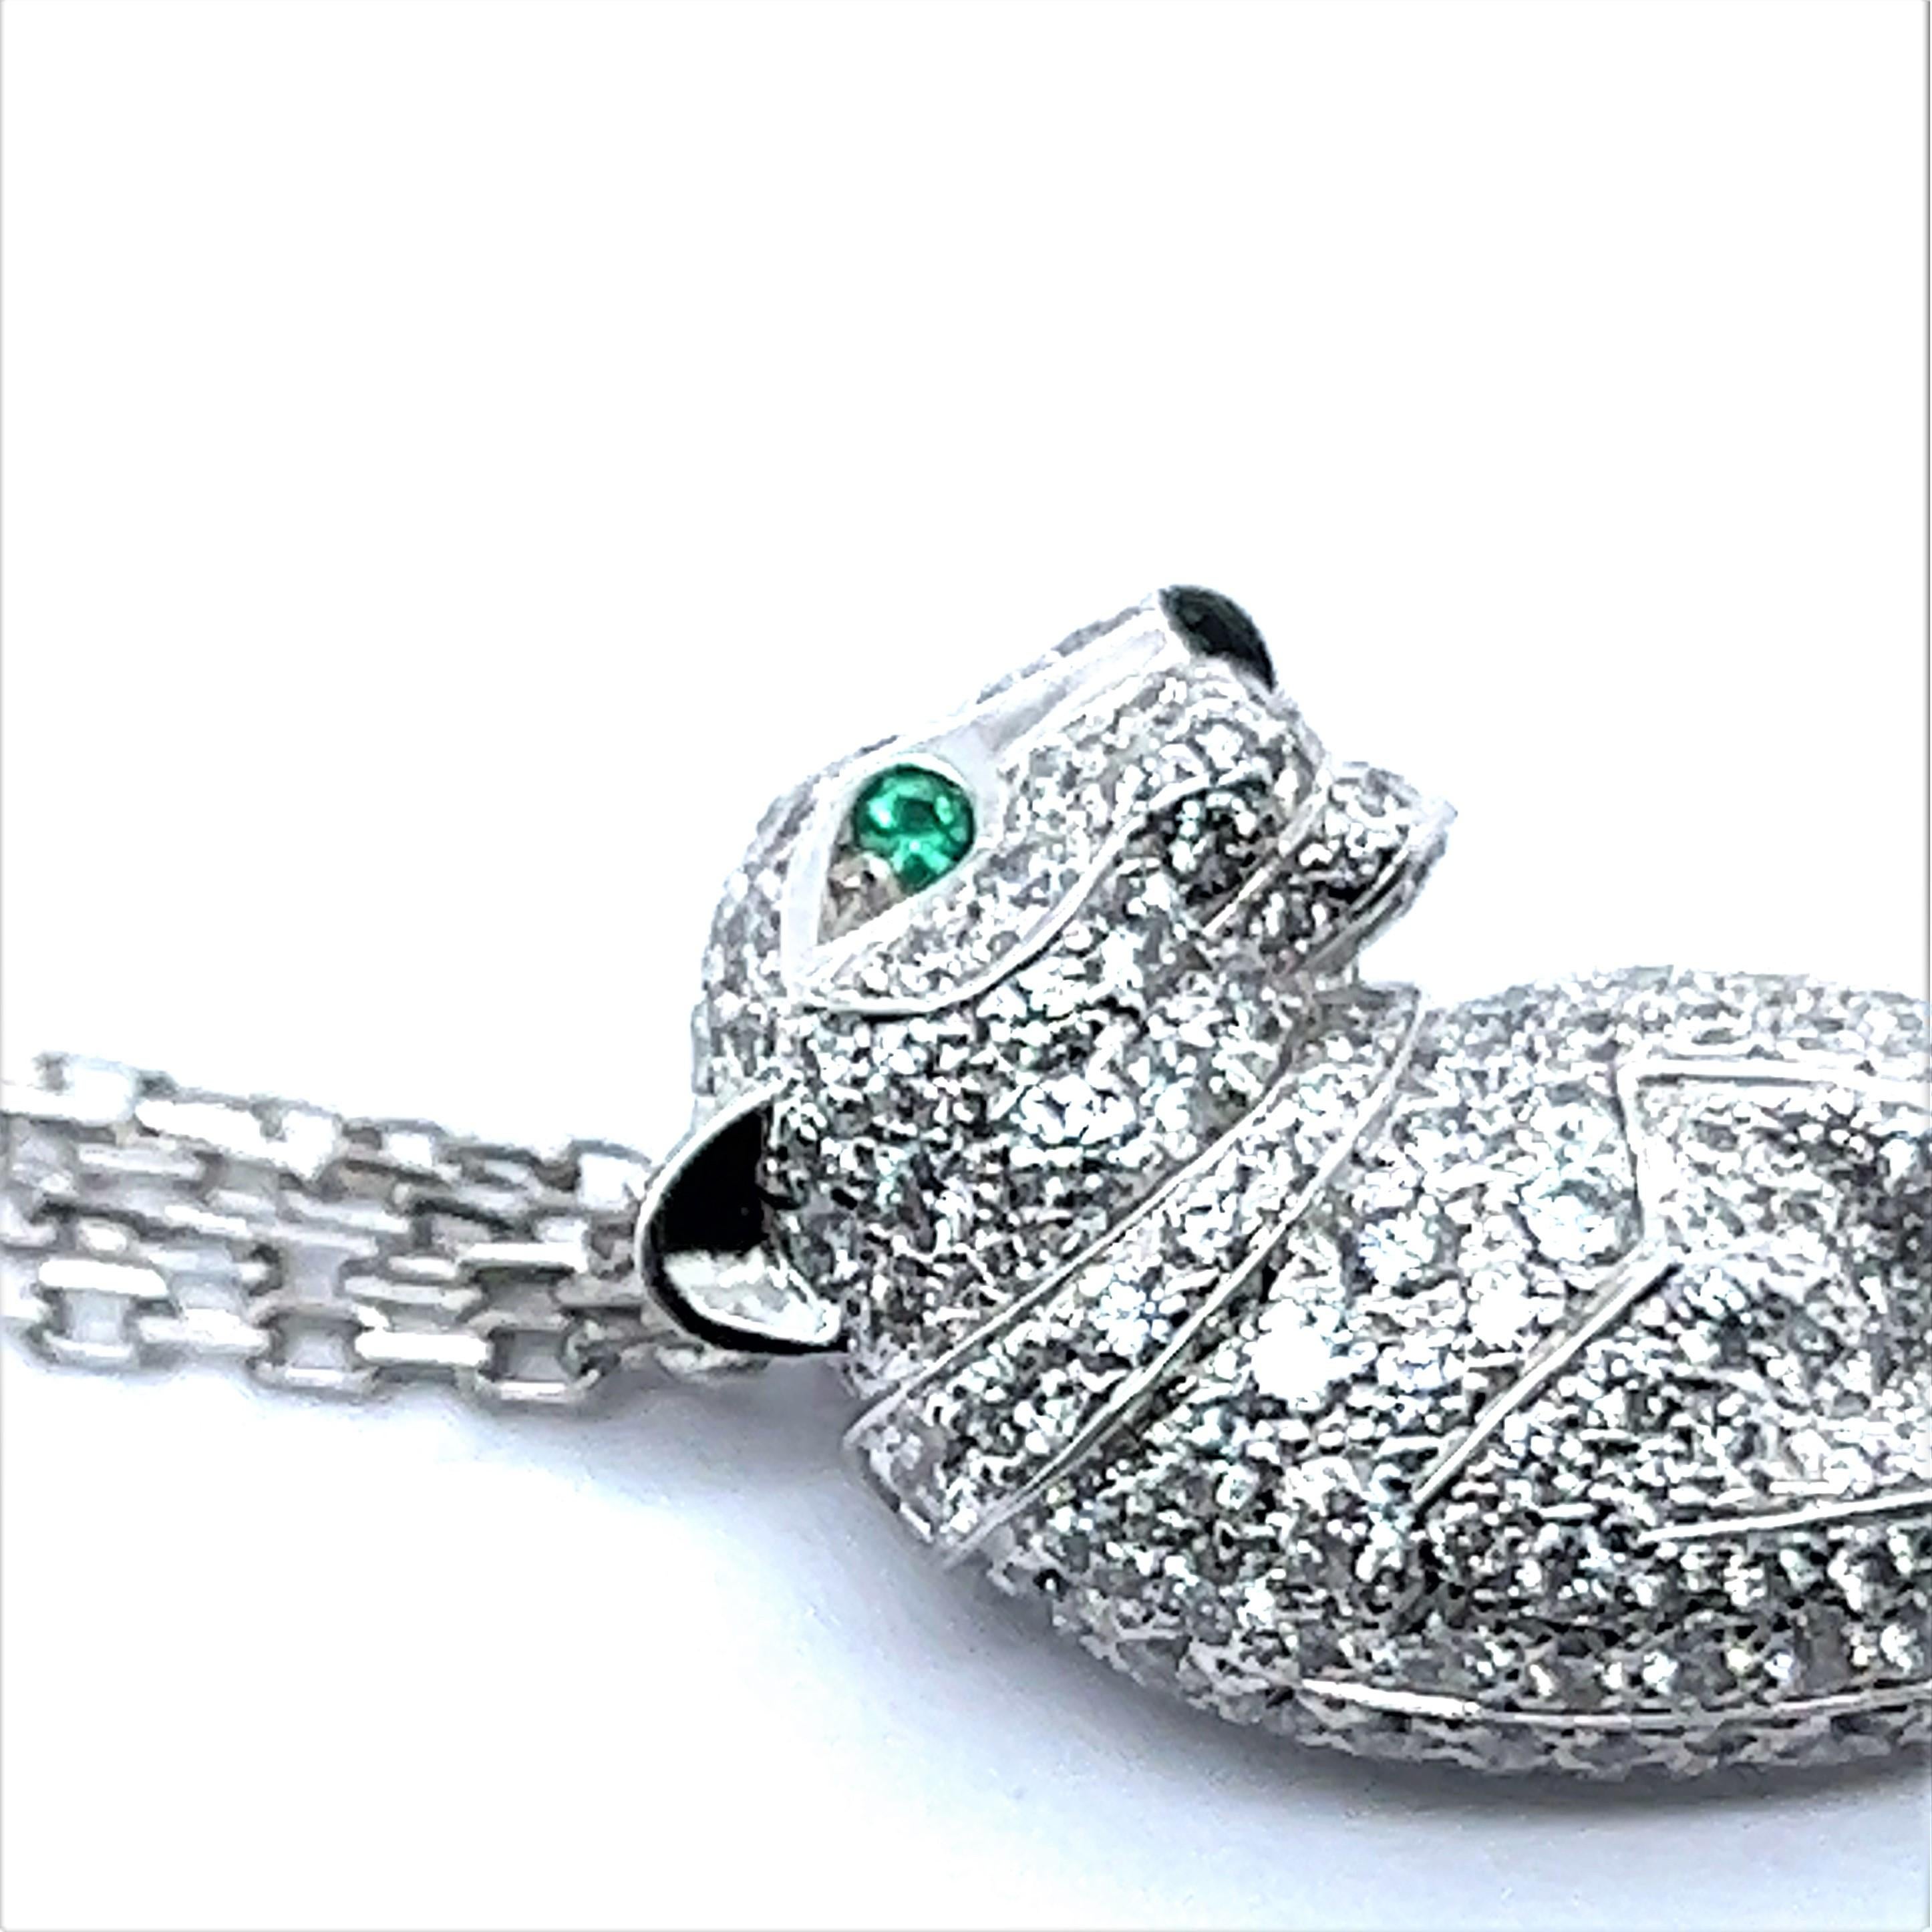 Brilliant Cut Panthère De Cartier Pendant Diamond Necklace in 18 Karat White Gold For Sale